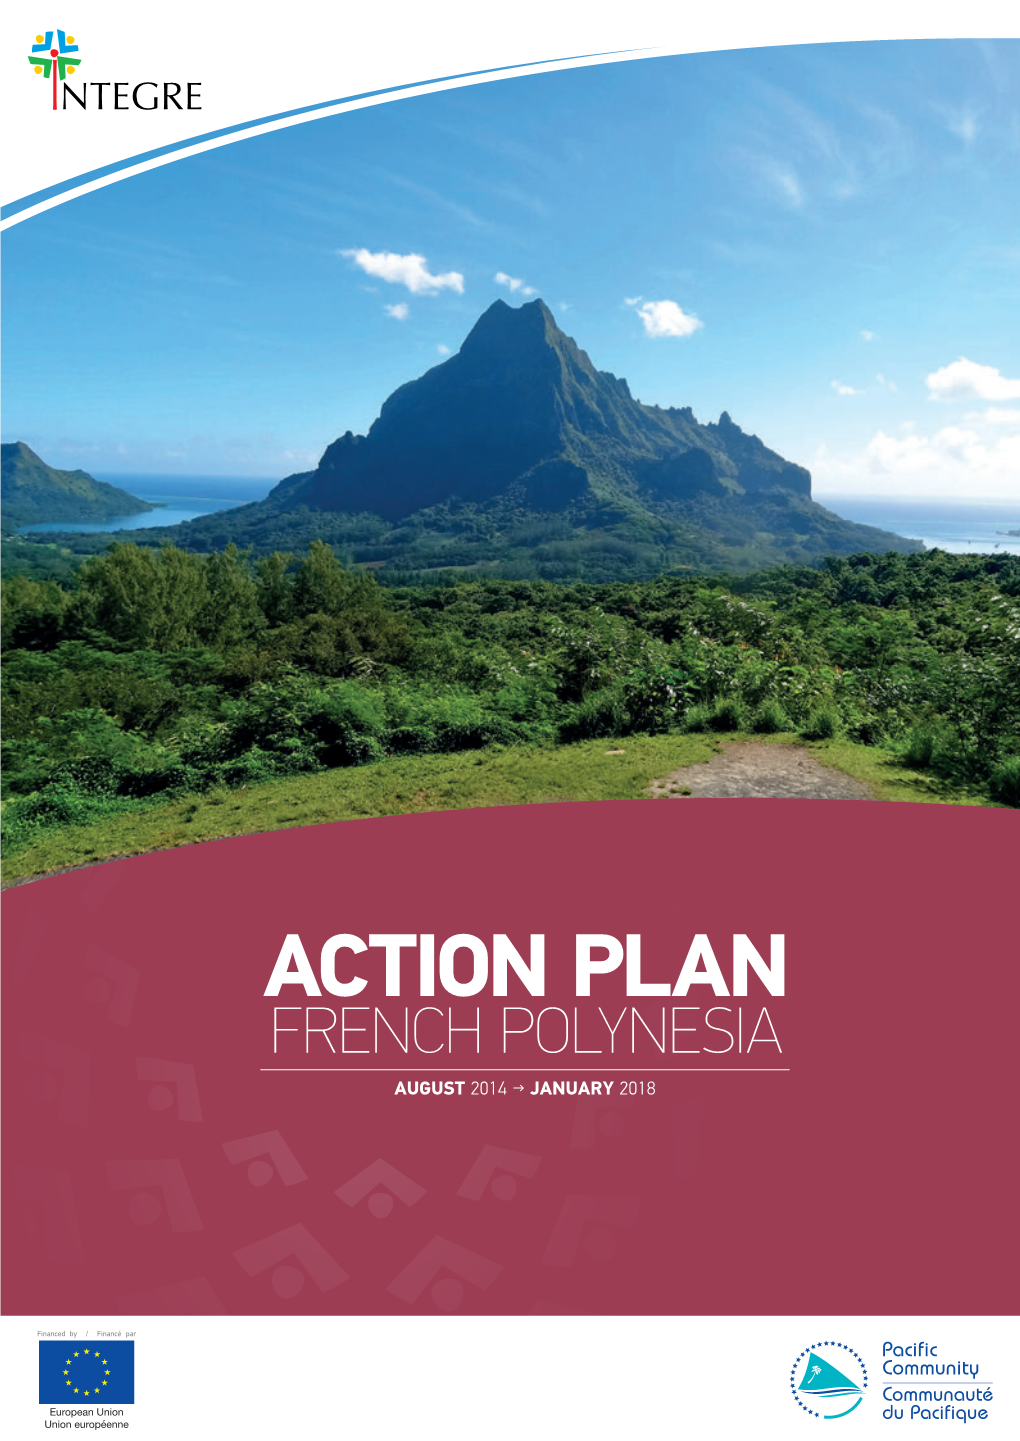 The Action Plan in French Polynesia French Polynesia